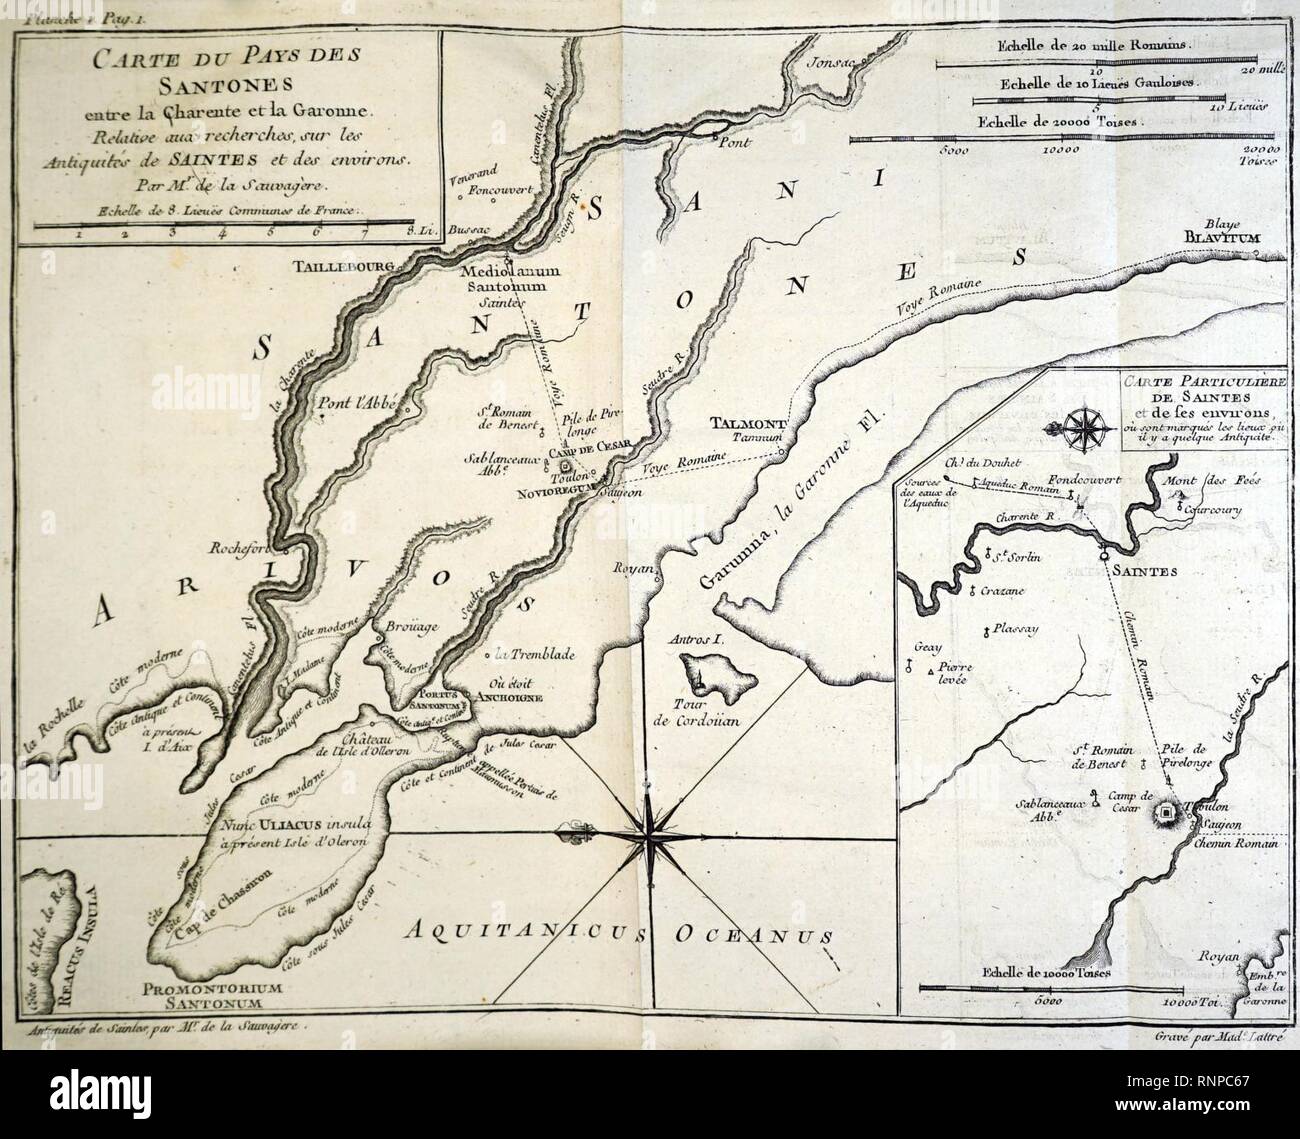 Carte du pays des santones 13571 Stock Photo - Alamy